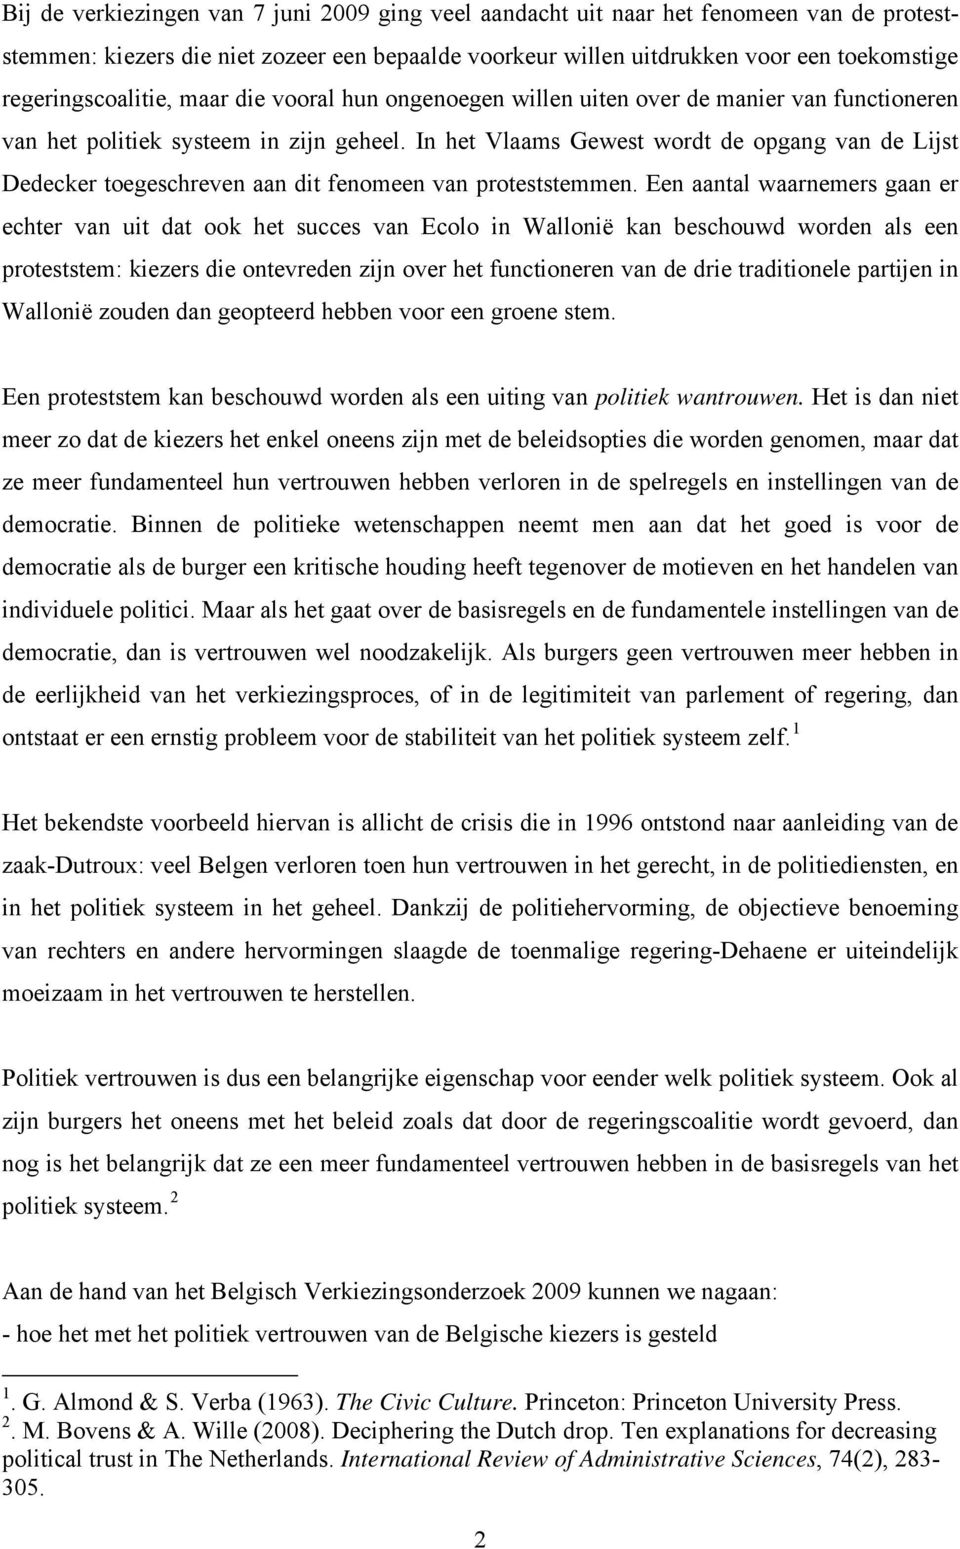 In het Vlaams Gewest wordt de opgang van de Lijst Dedecker toegeschreven aan dit fenomeen van proteststemmen.